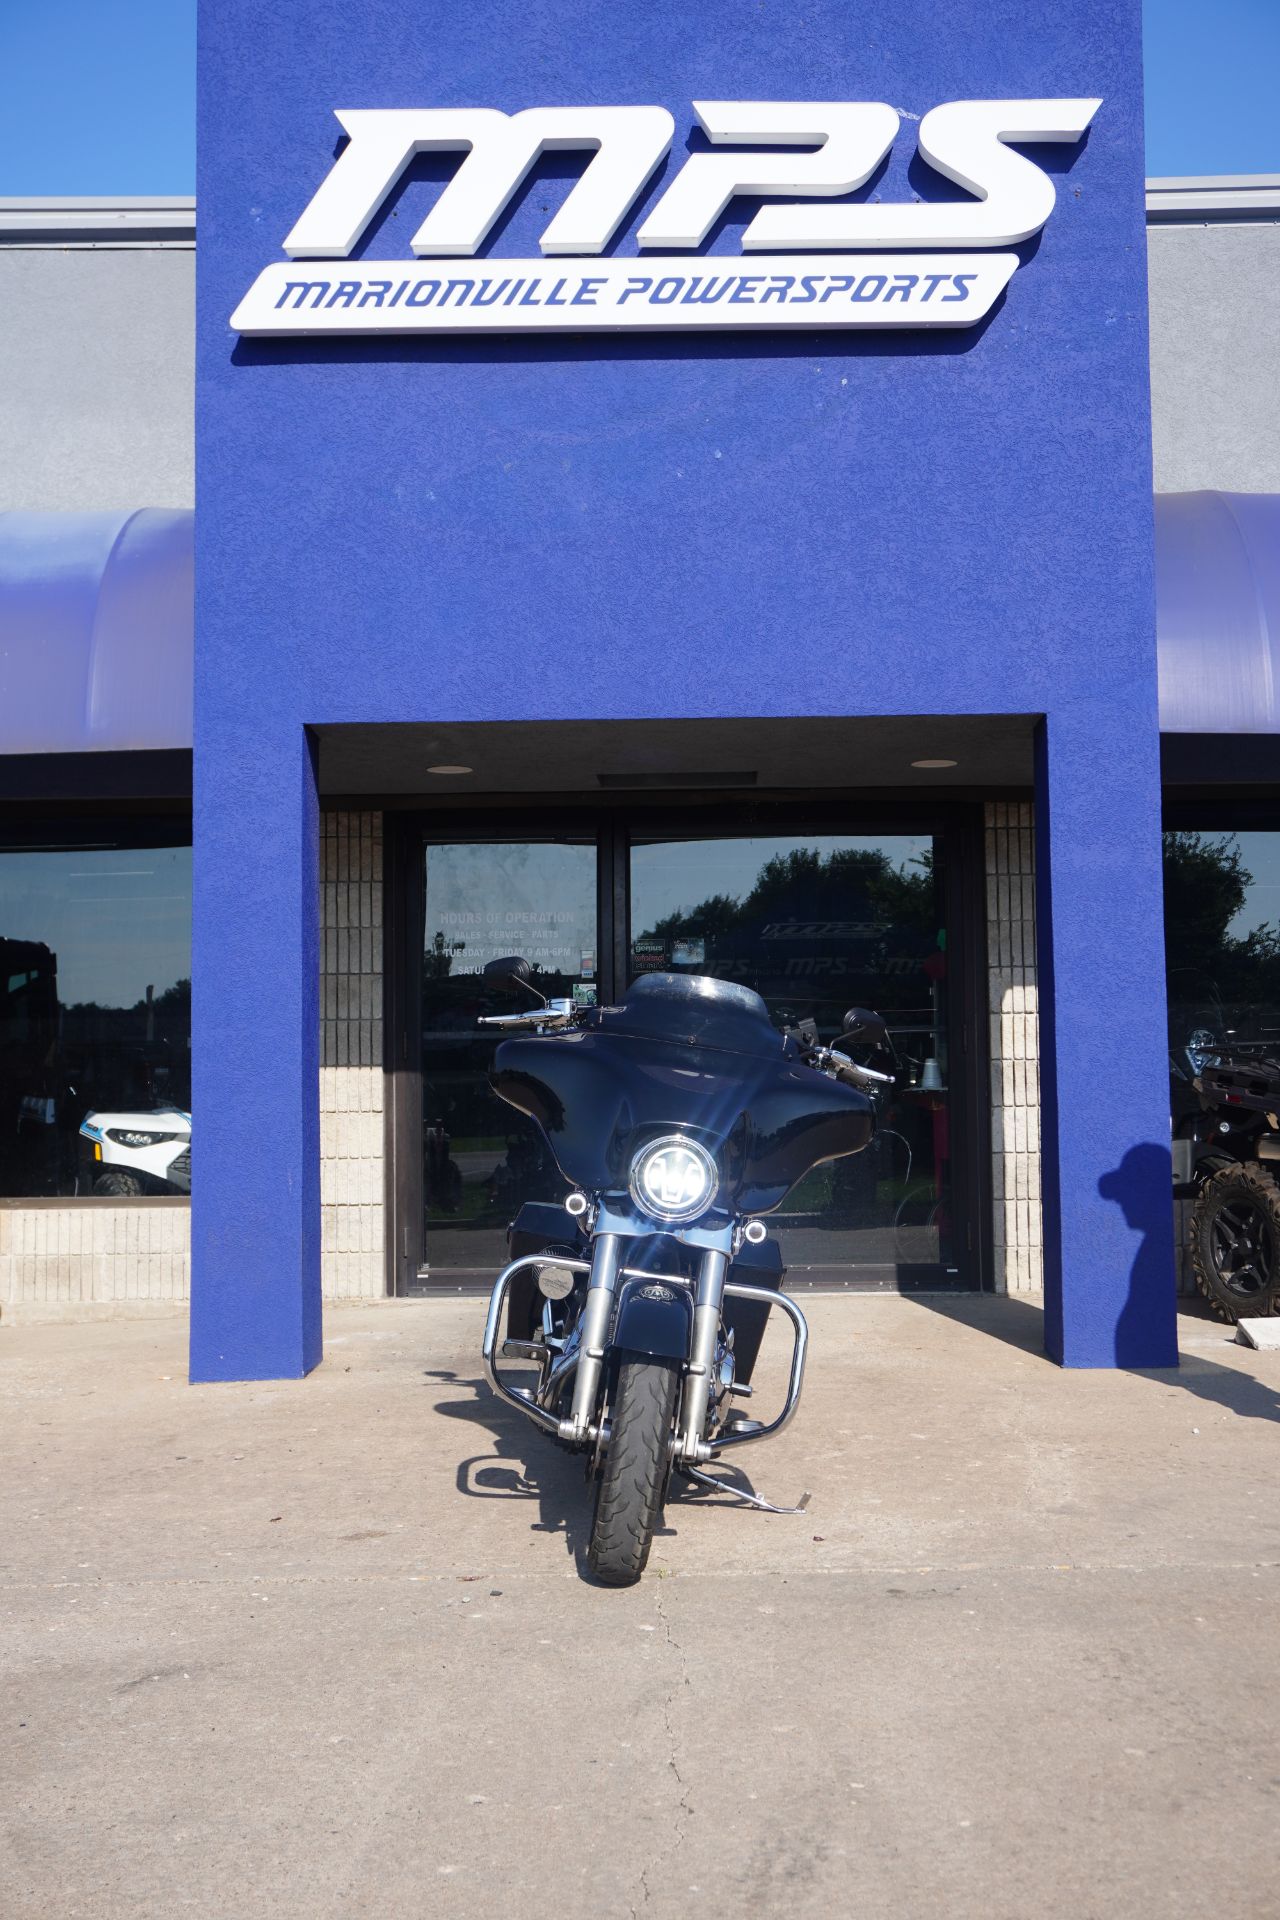 2009 Harley-Davidson Street Glide® in Marionville, Missouri - Photo 2